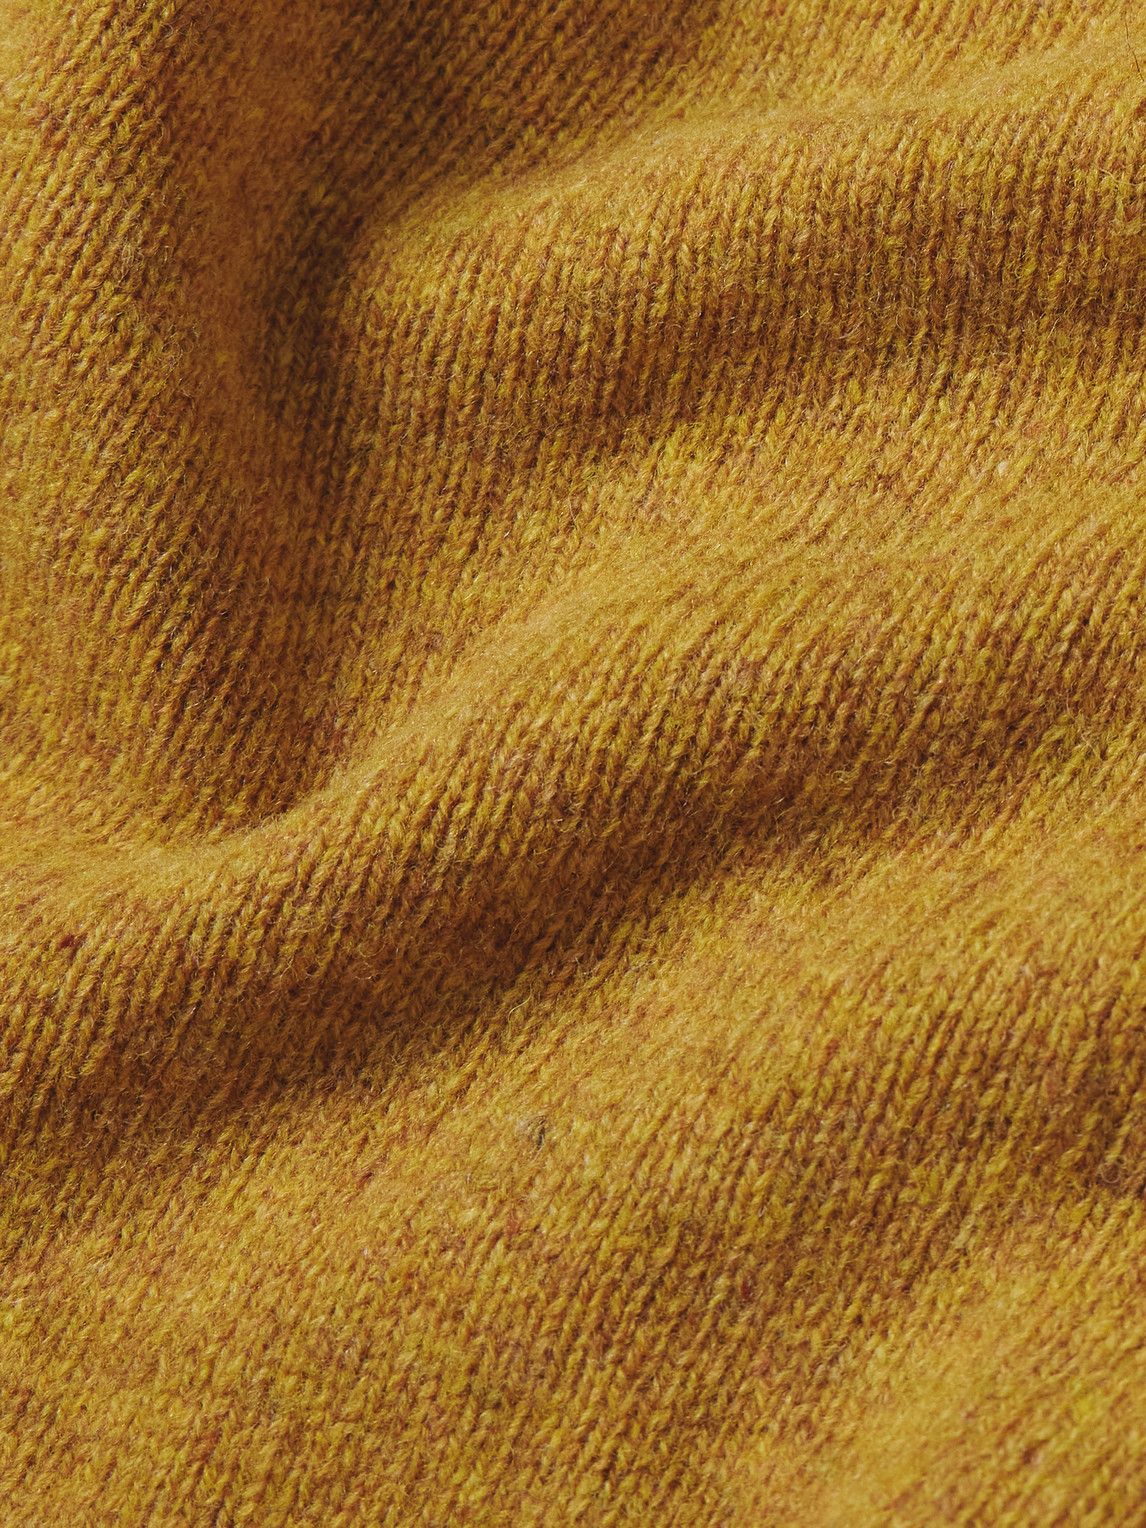 Shop Kingsman Shetland Wool Sweater In Yellow